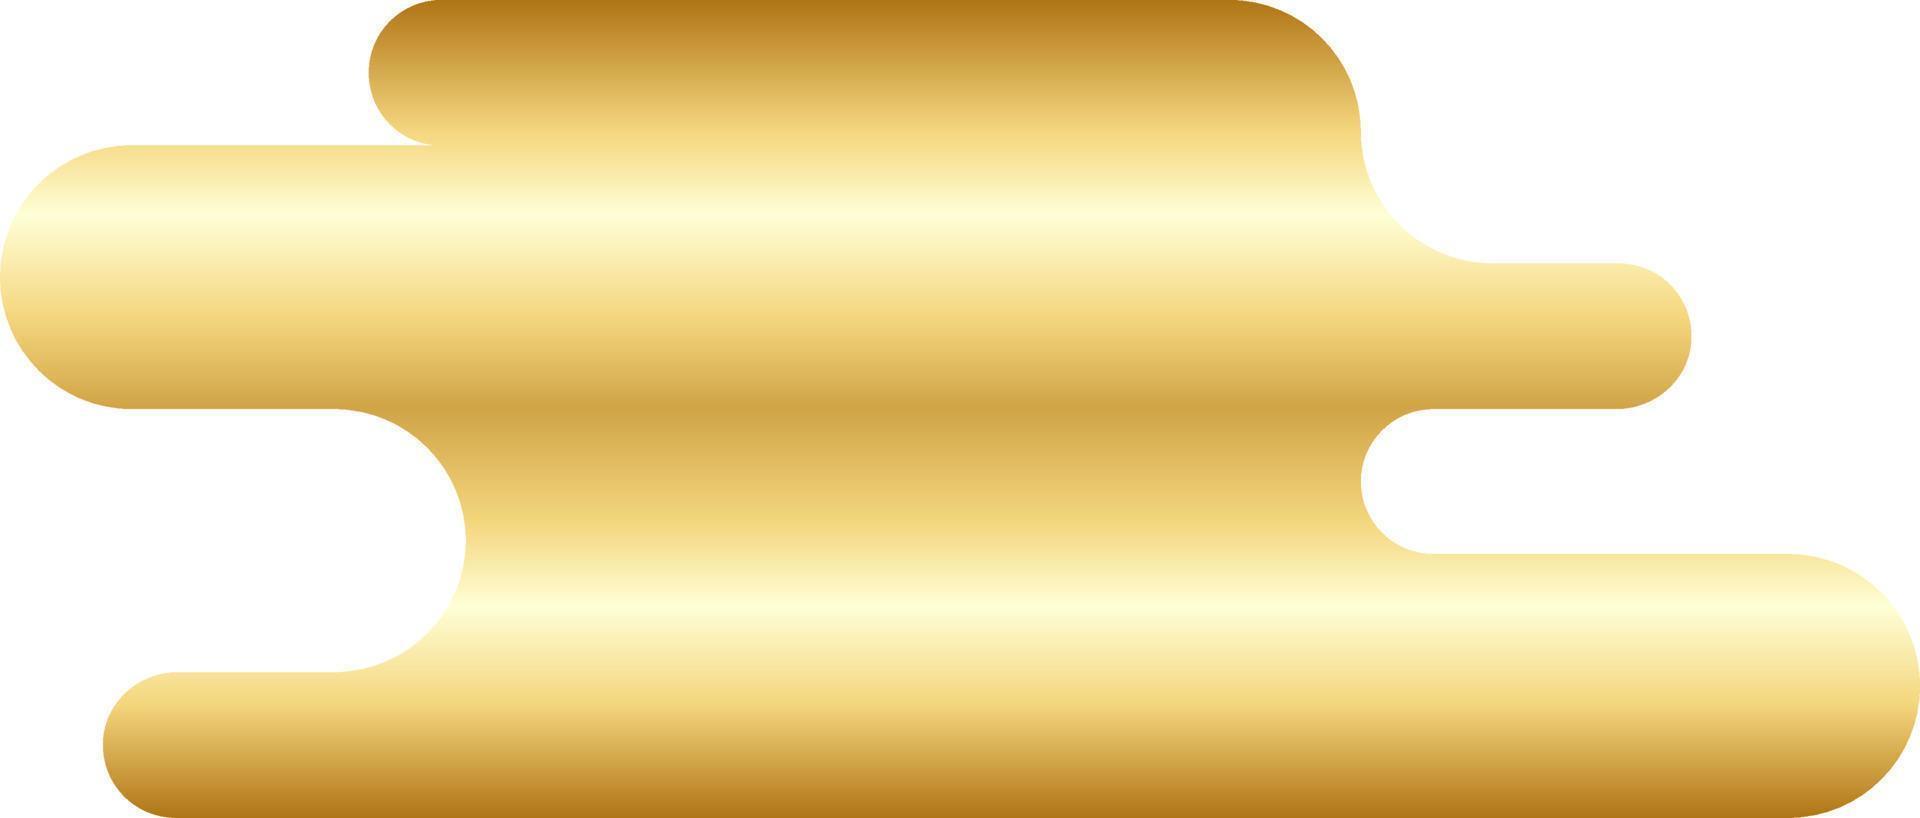 abstrakt guld minimal runda form vektor